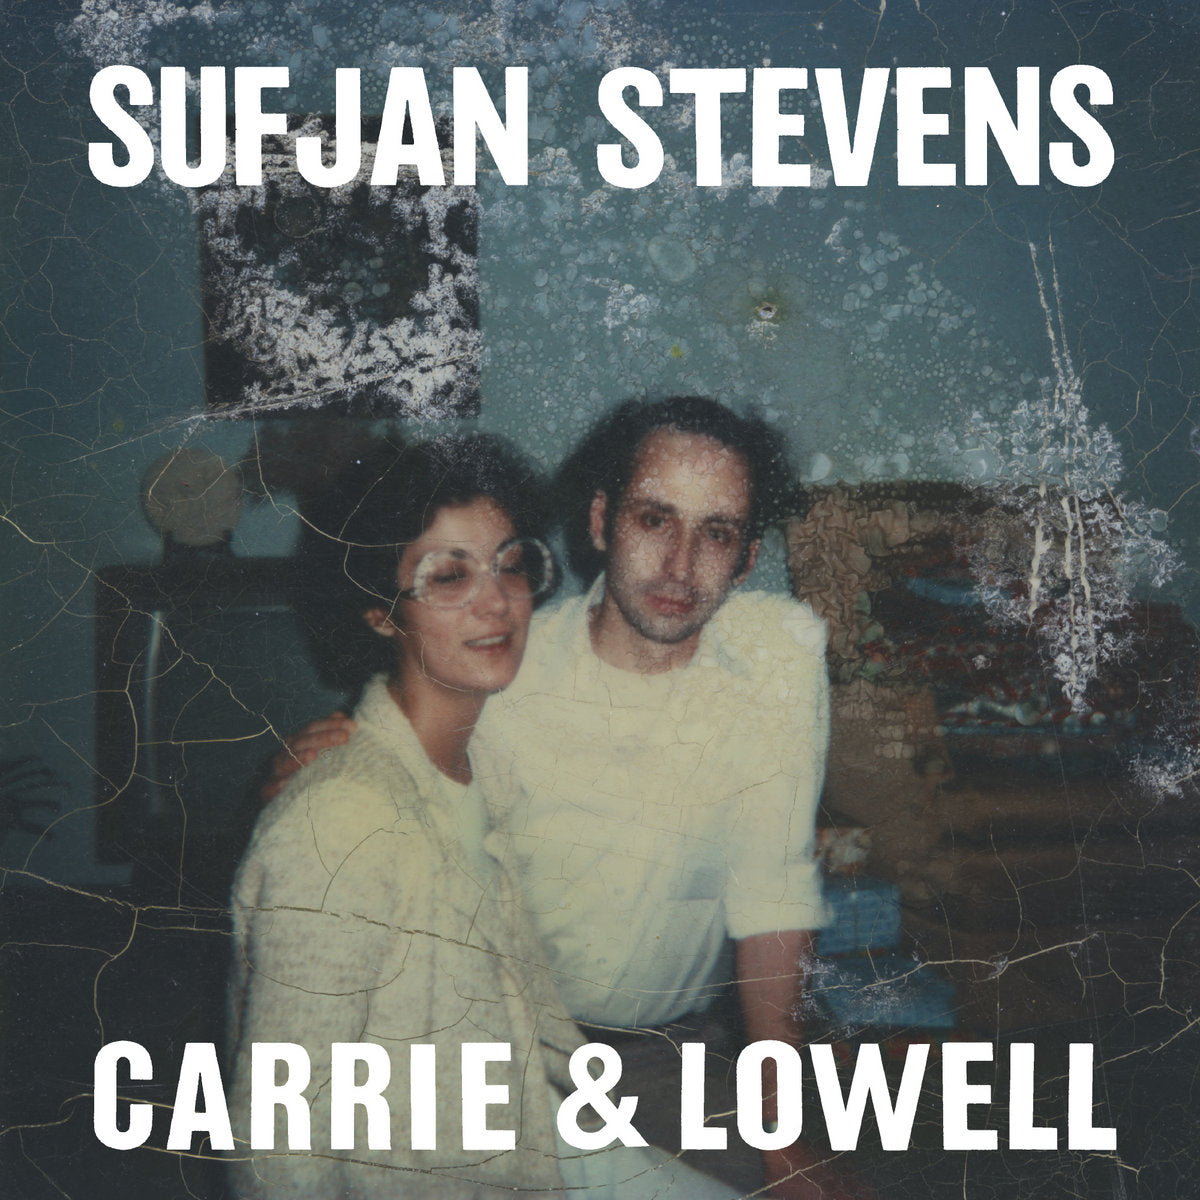 SUFJAN STEVENS 'CARRIE & LOWELL'